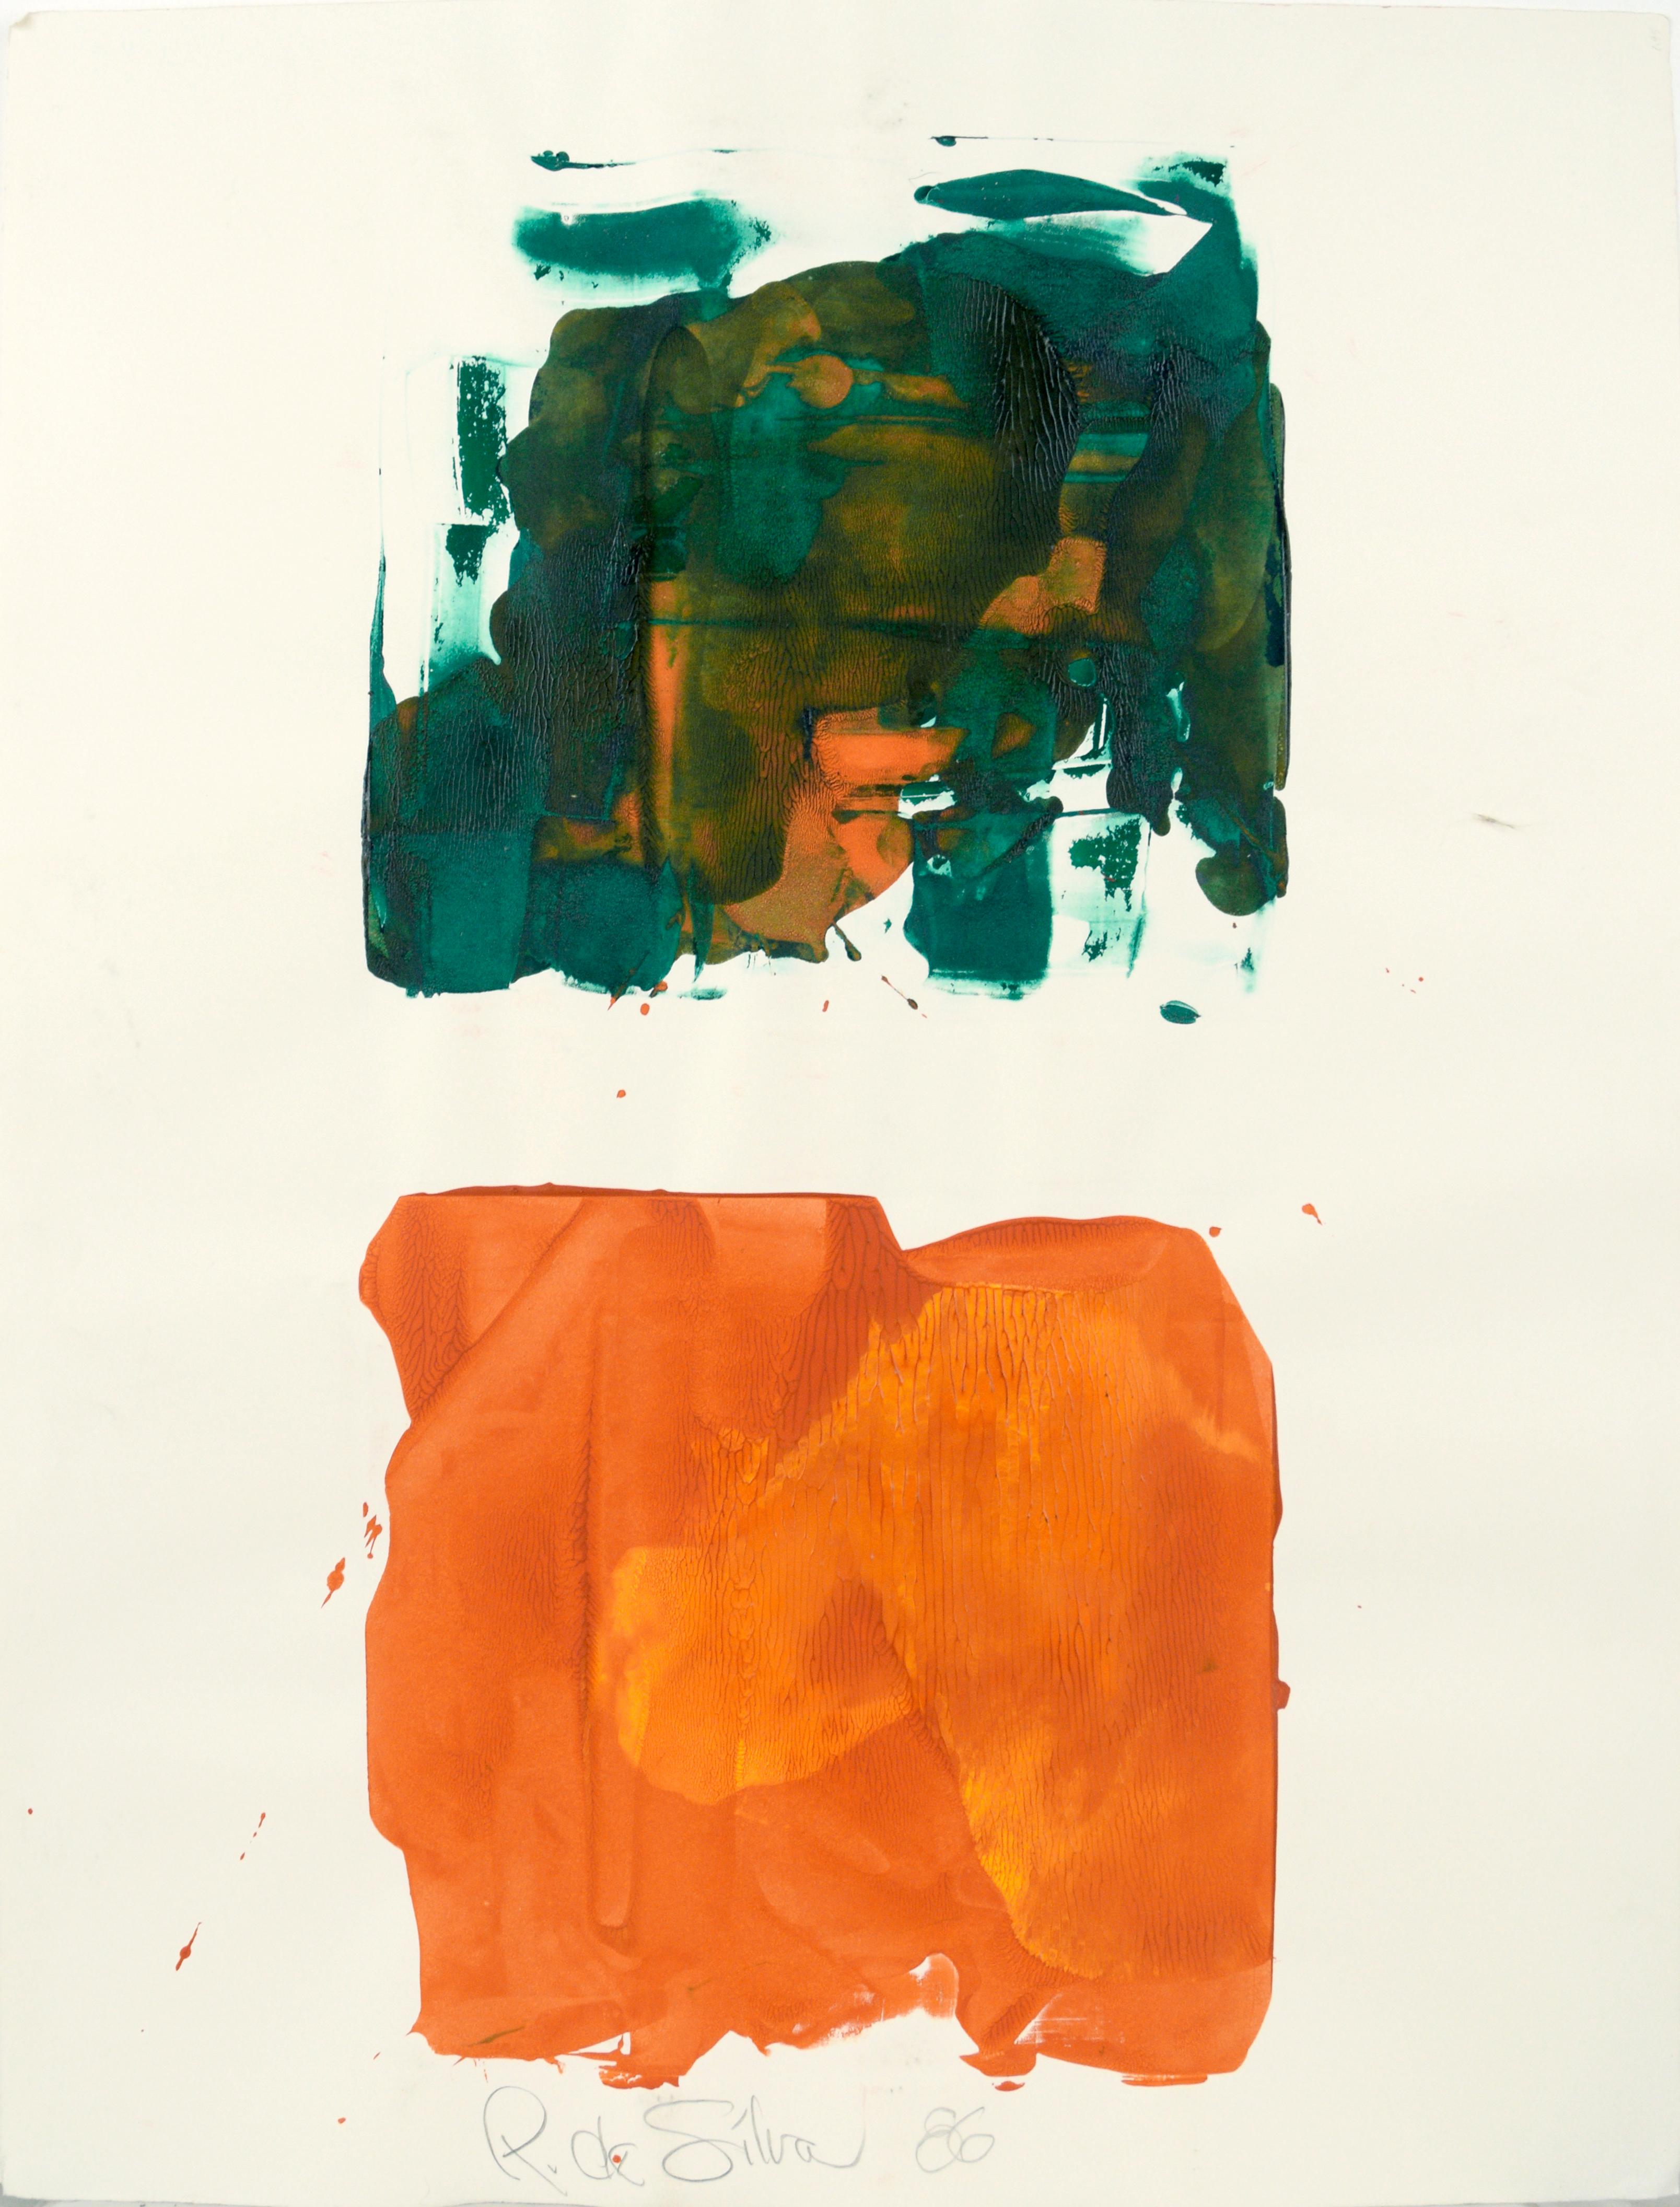 Abstract Painting Ricardo de Silva - Composition abstraite verte sur orange à l'acrylique sur papier